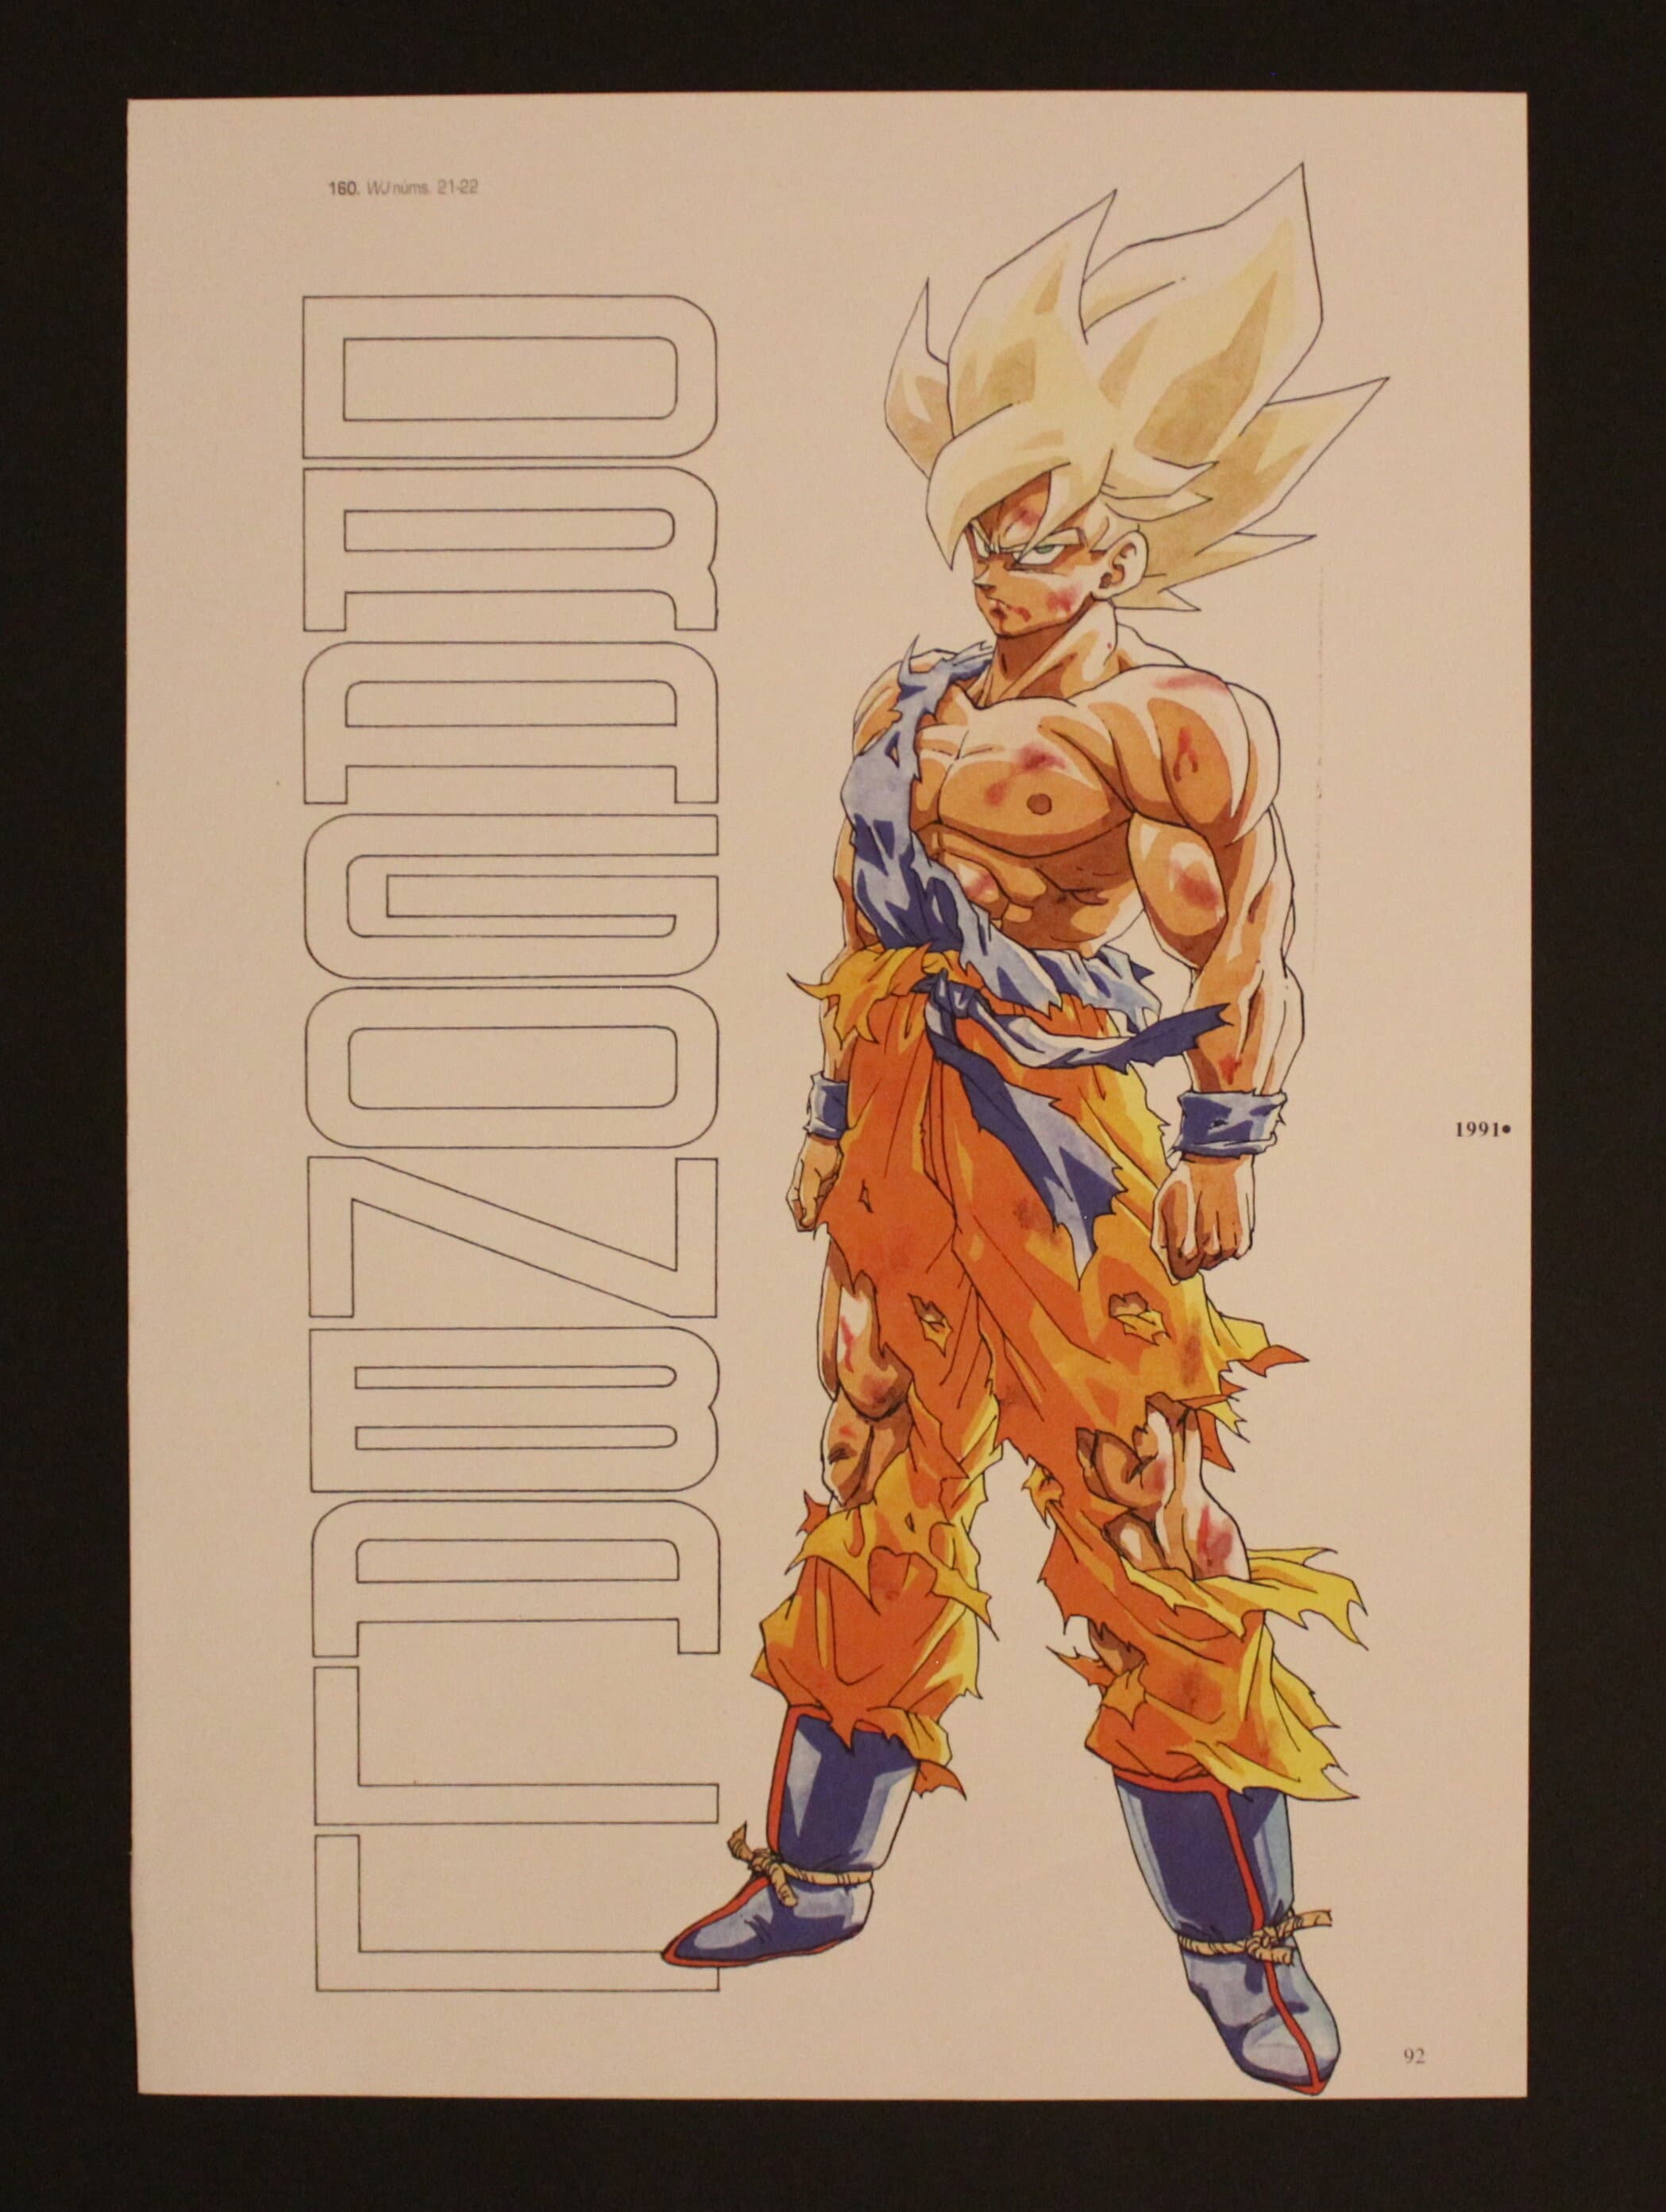 Quadro Canvas Sem Moldura 80x60 Goku Evolution Dragon Ball Z Super